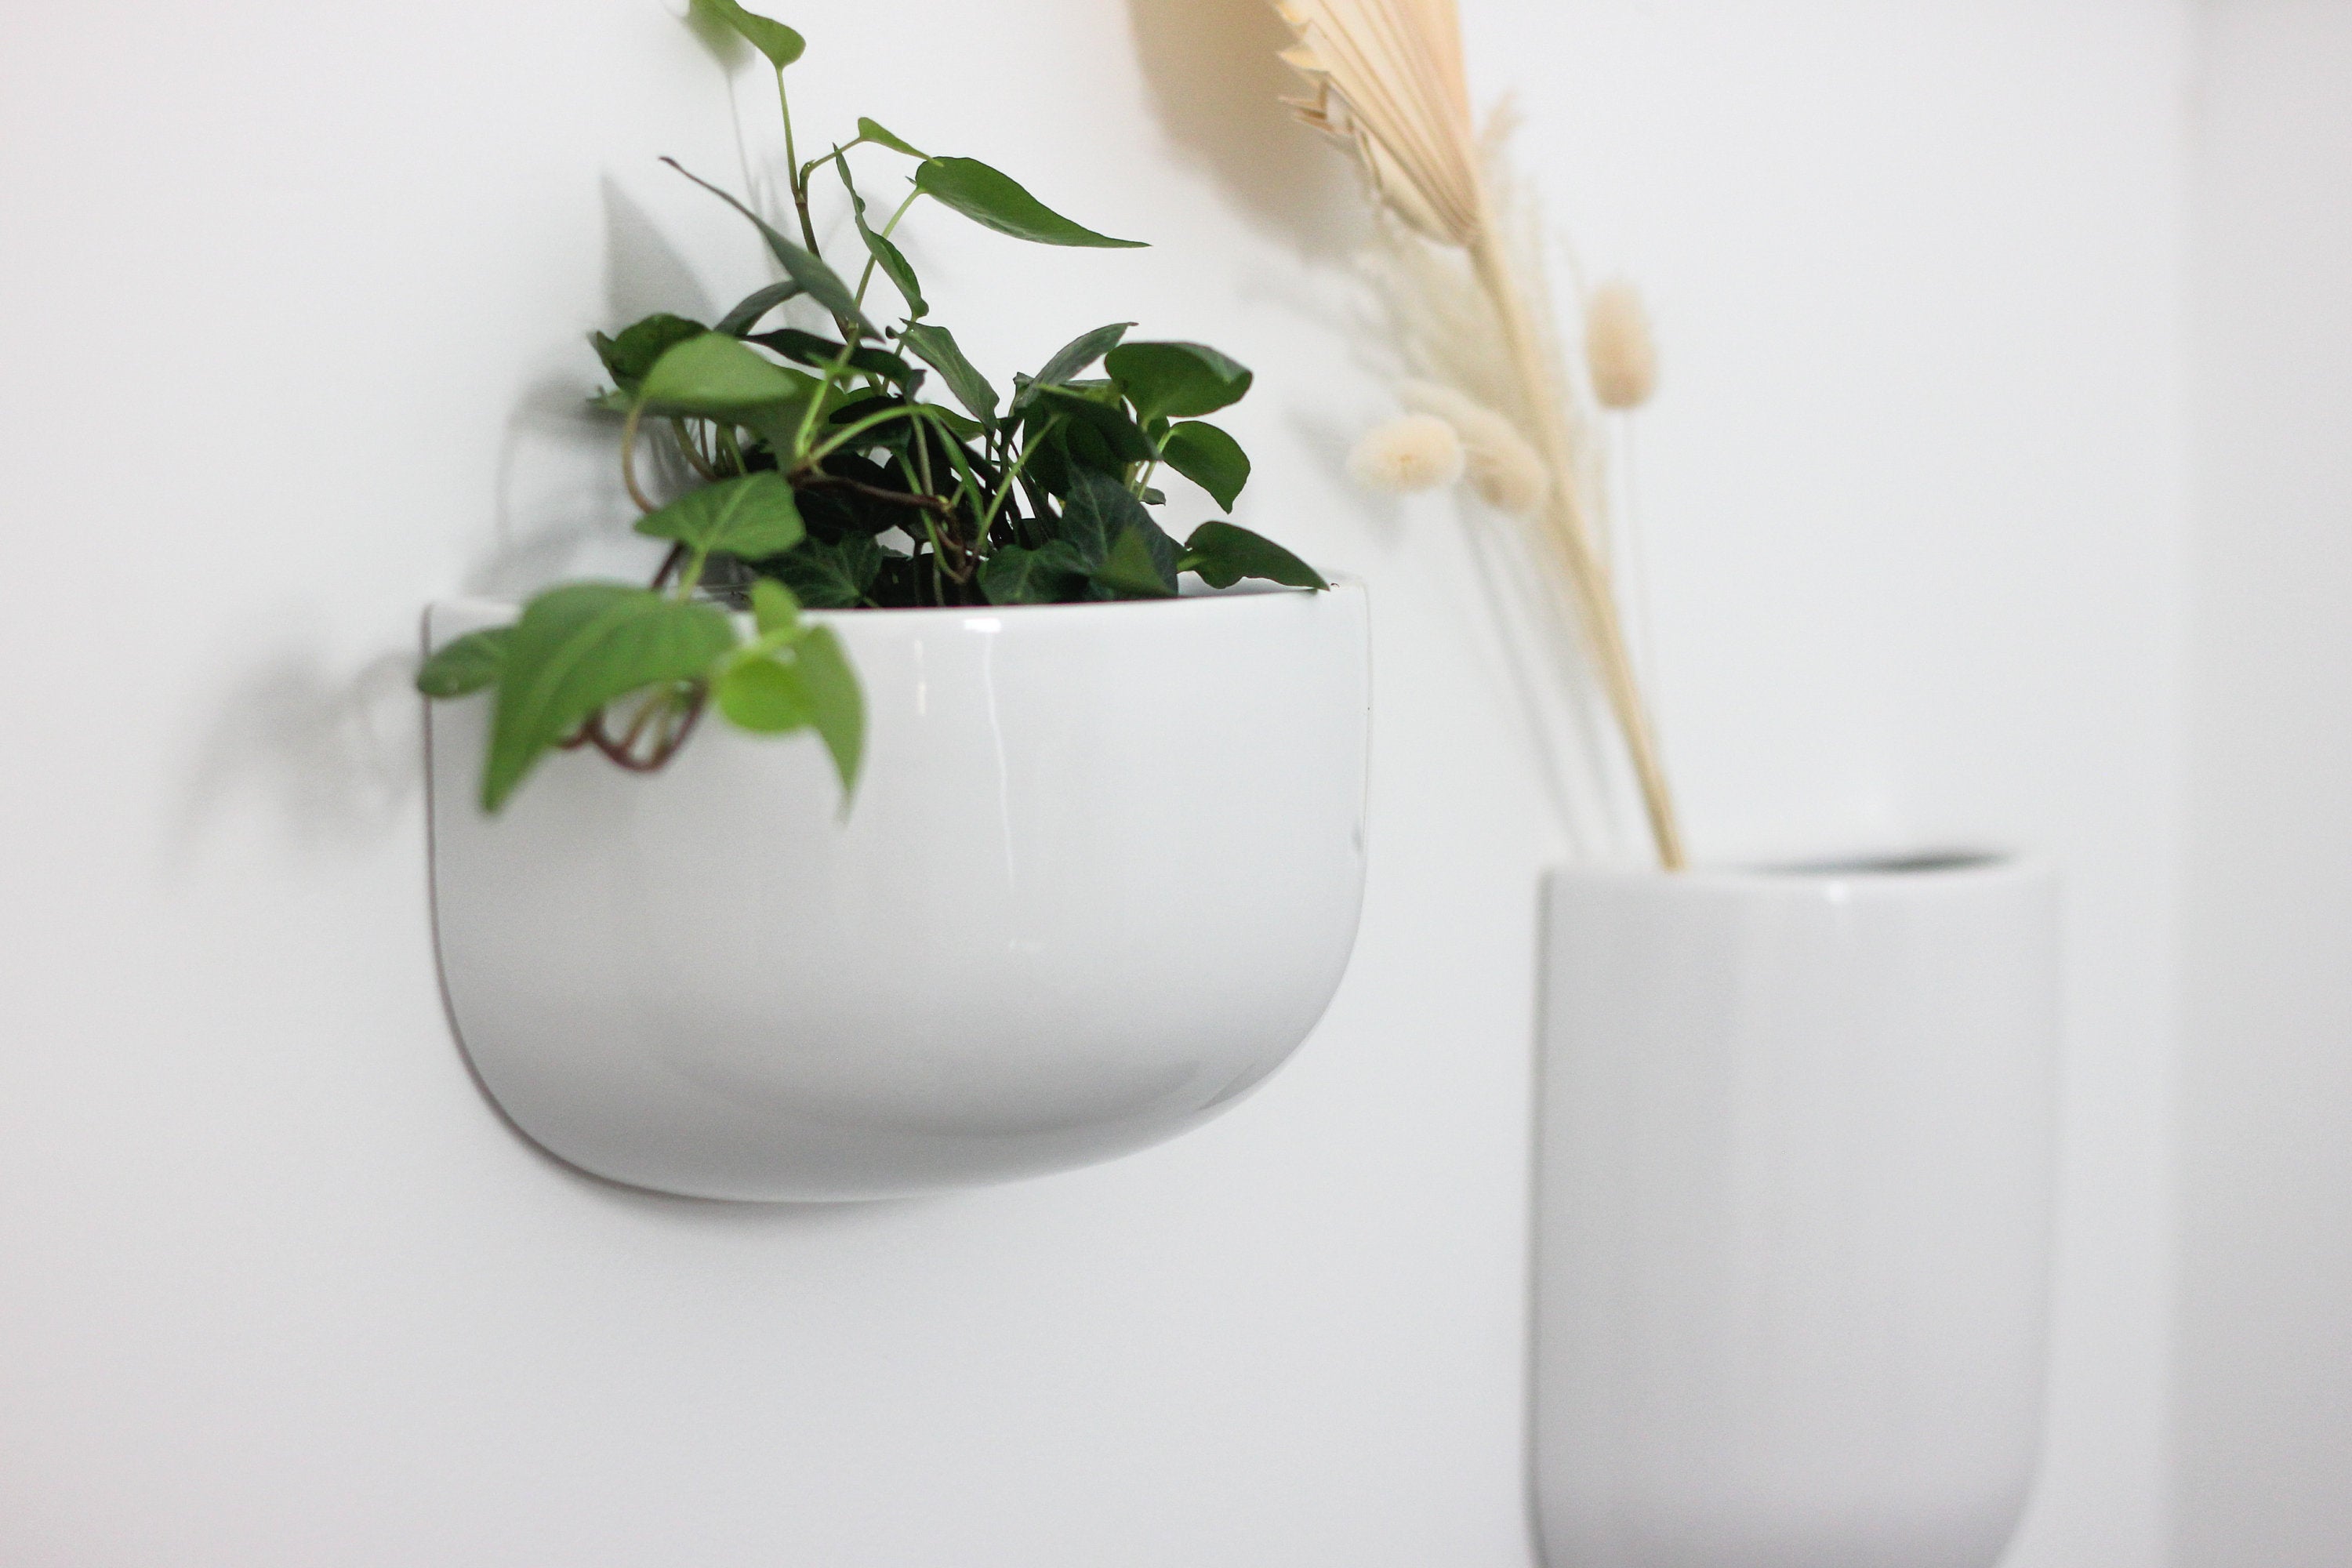 Wall Vase Planter in White Ceramic